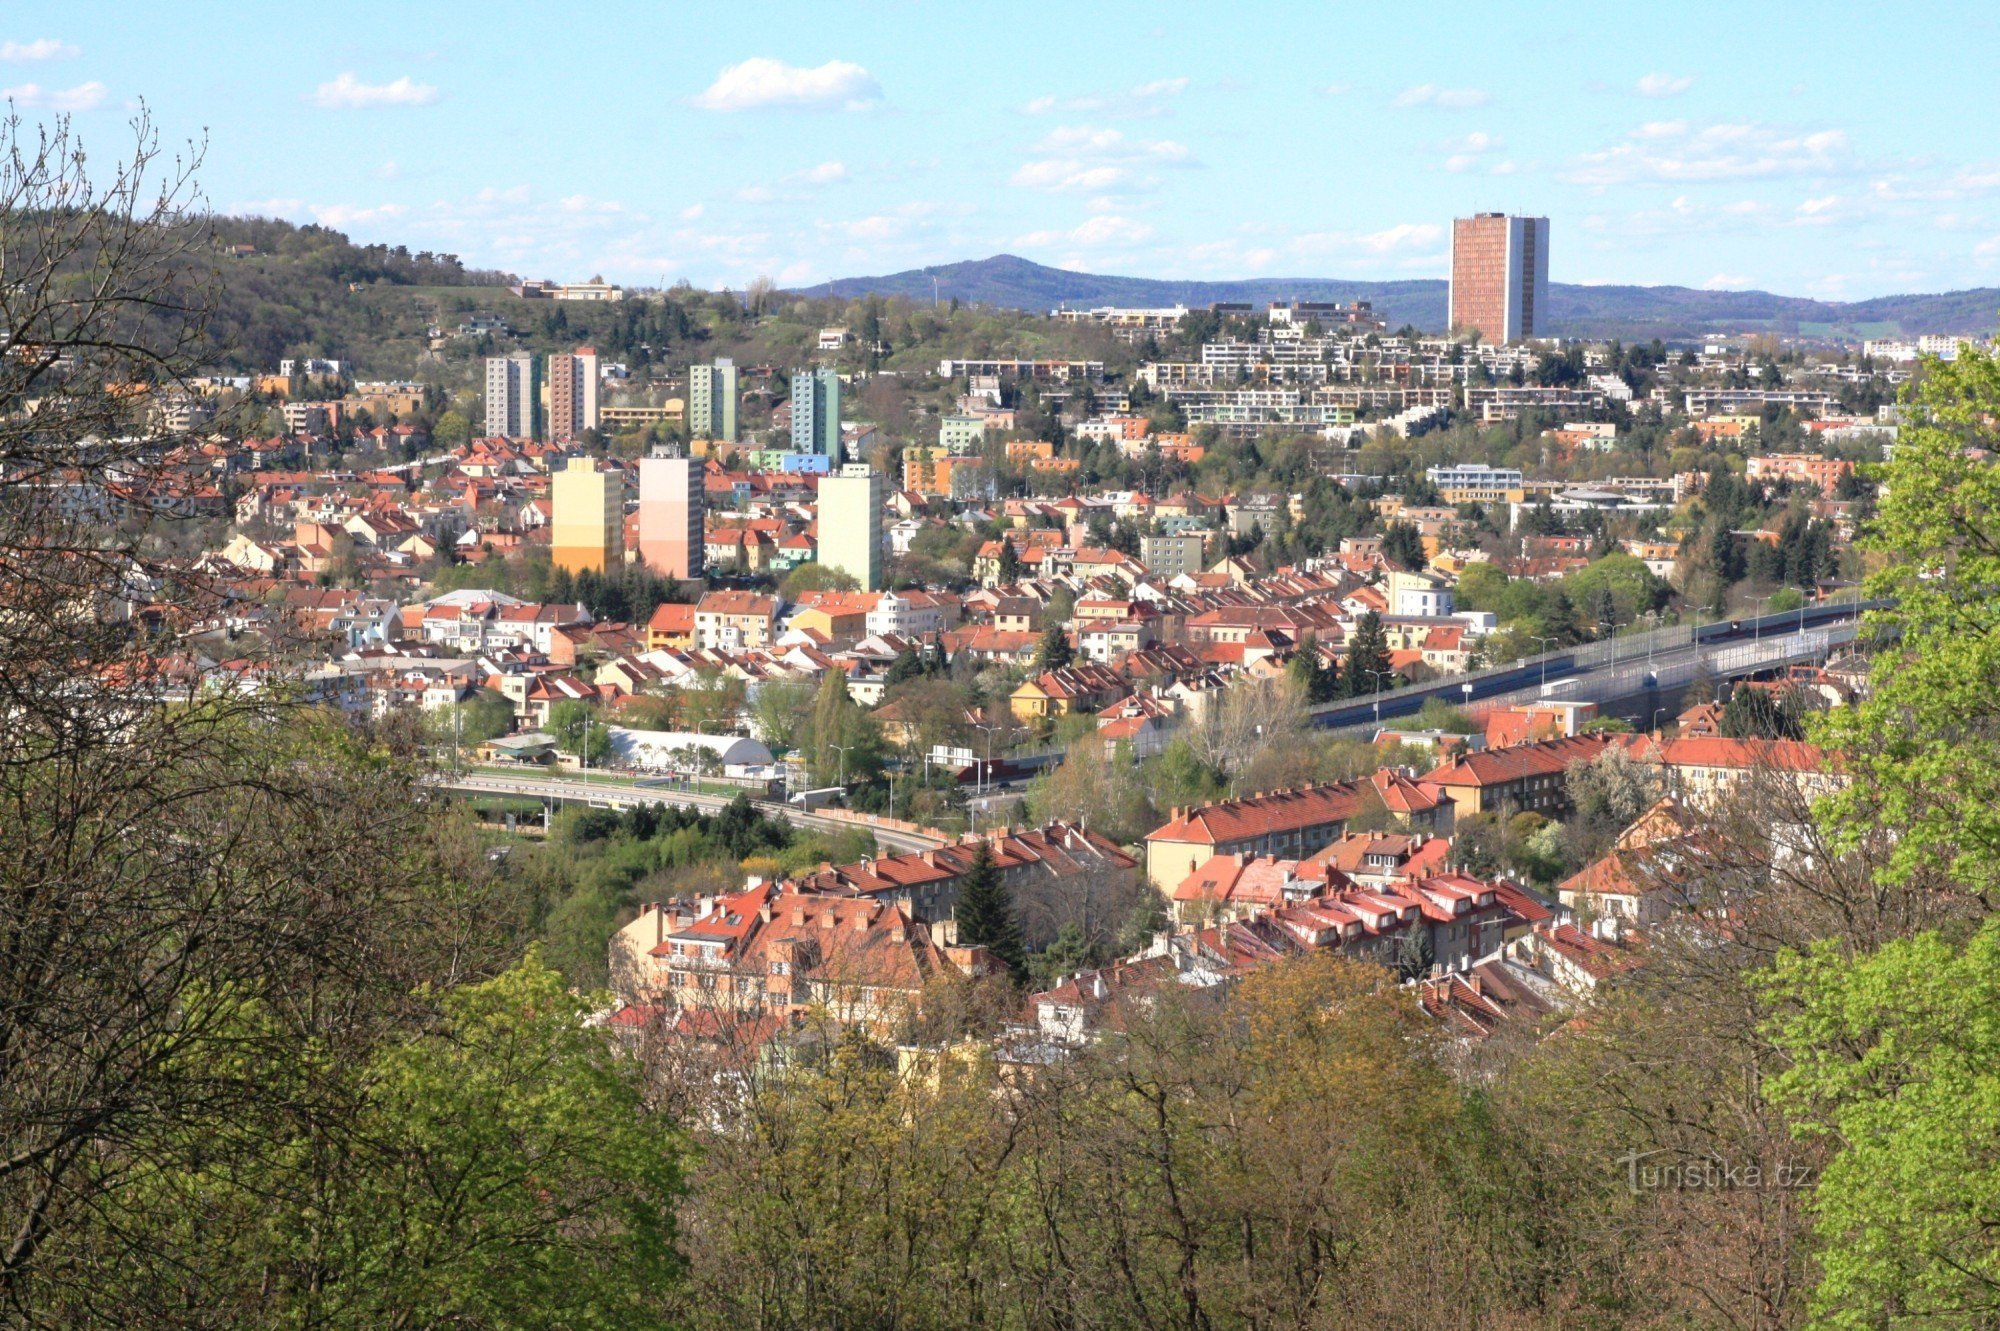 Vedere din punctul de vedere al districtului Žabovřesky și Komín